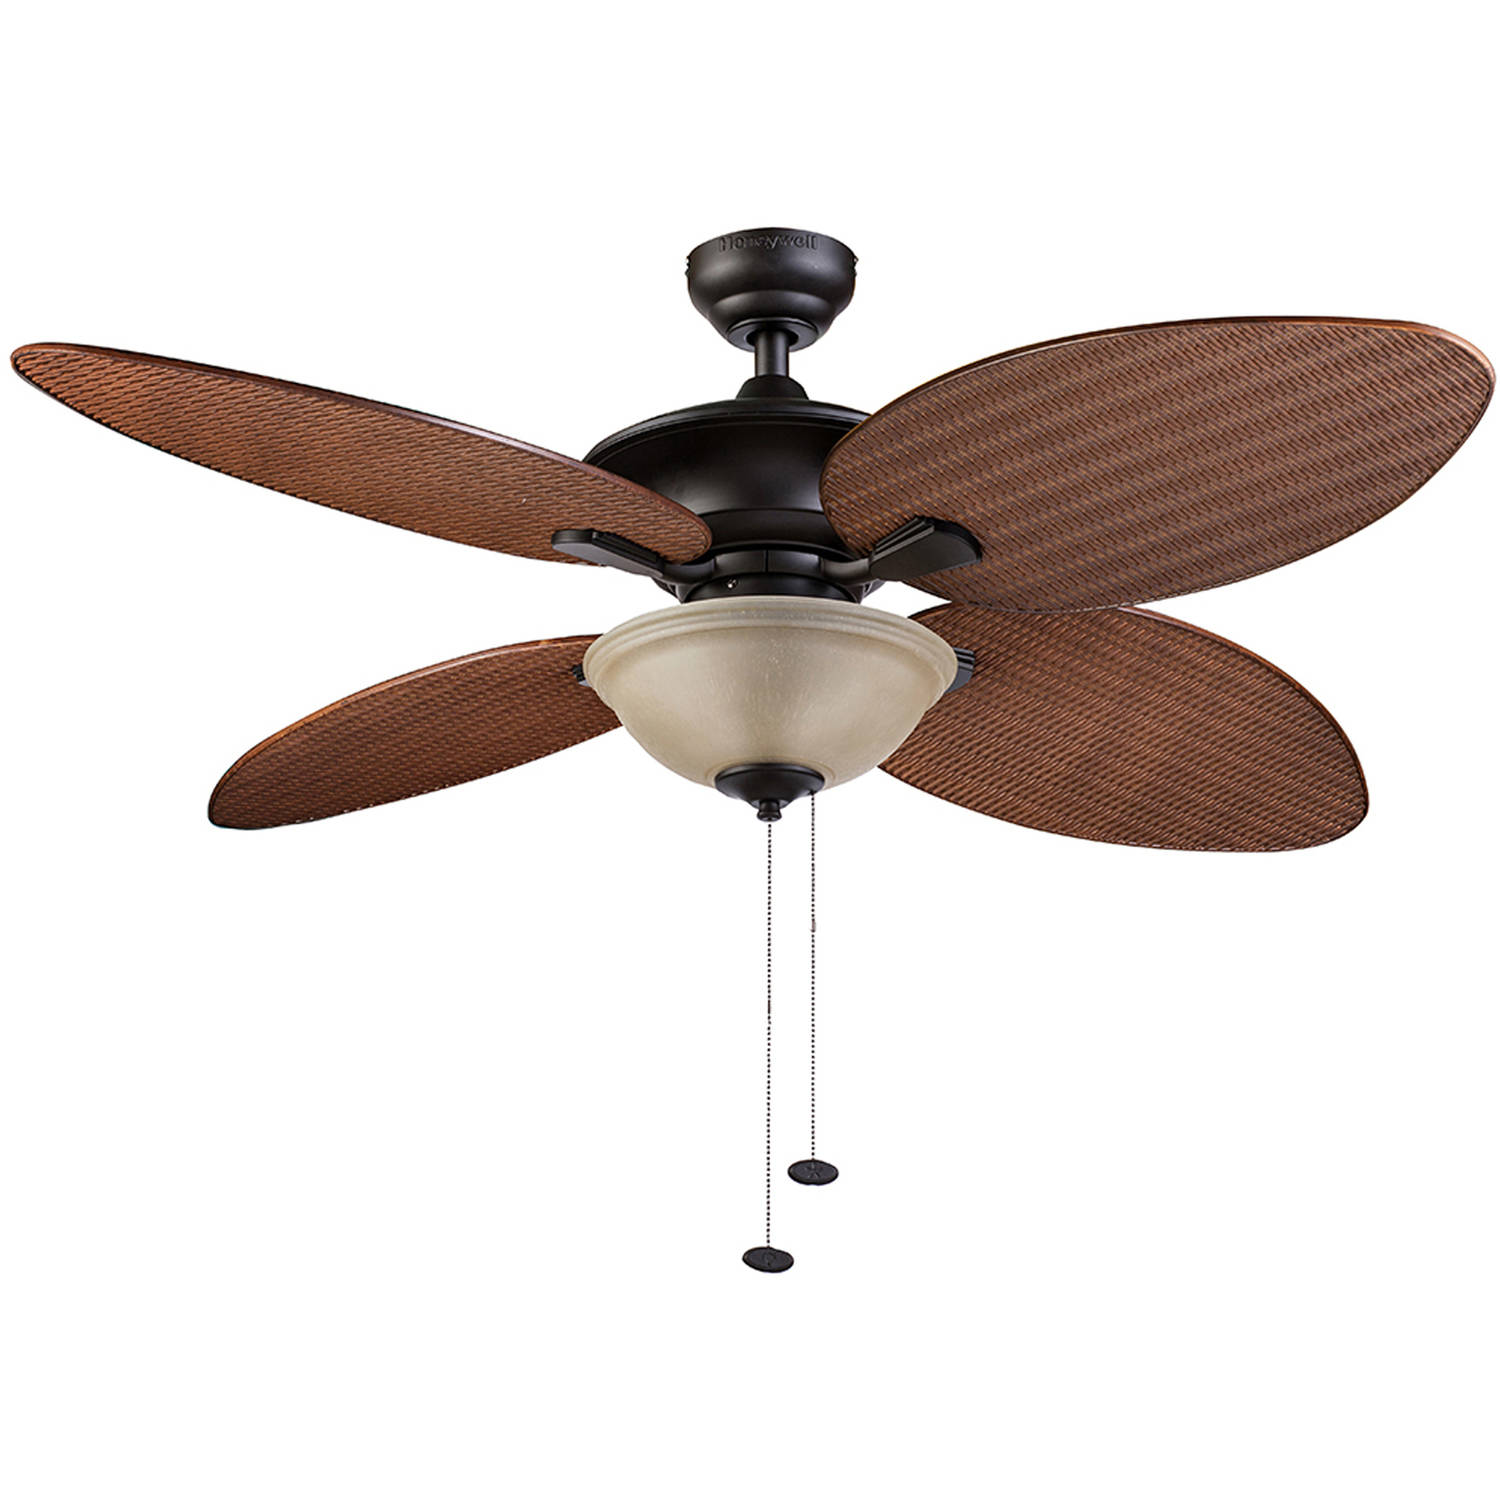 Buy 52 Honeywell Sunset Key Bronze 4 Blade Tropical Ceiling Fan W Reversible Airflow Online In Turkey 192479409